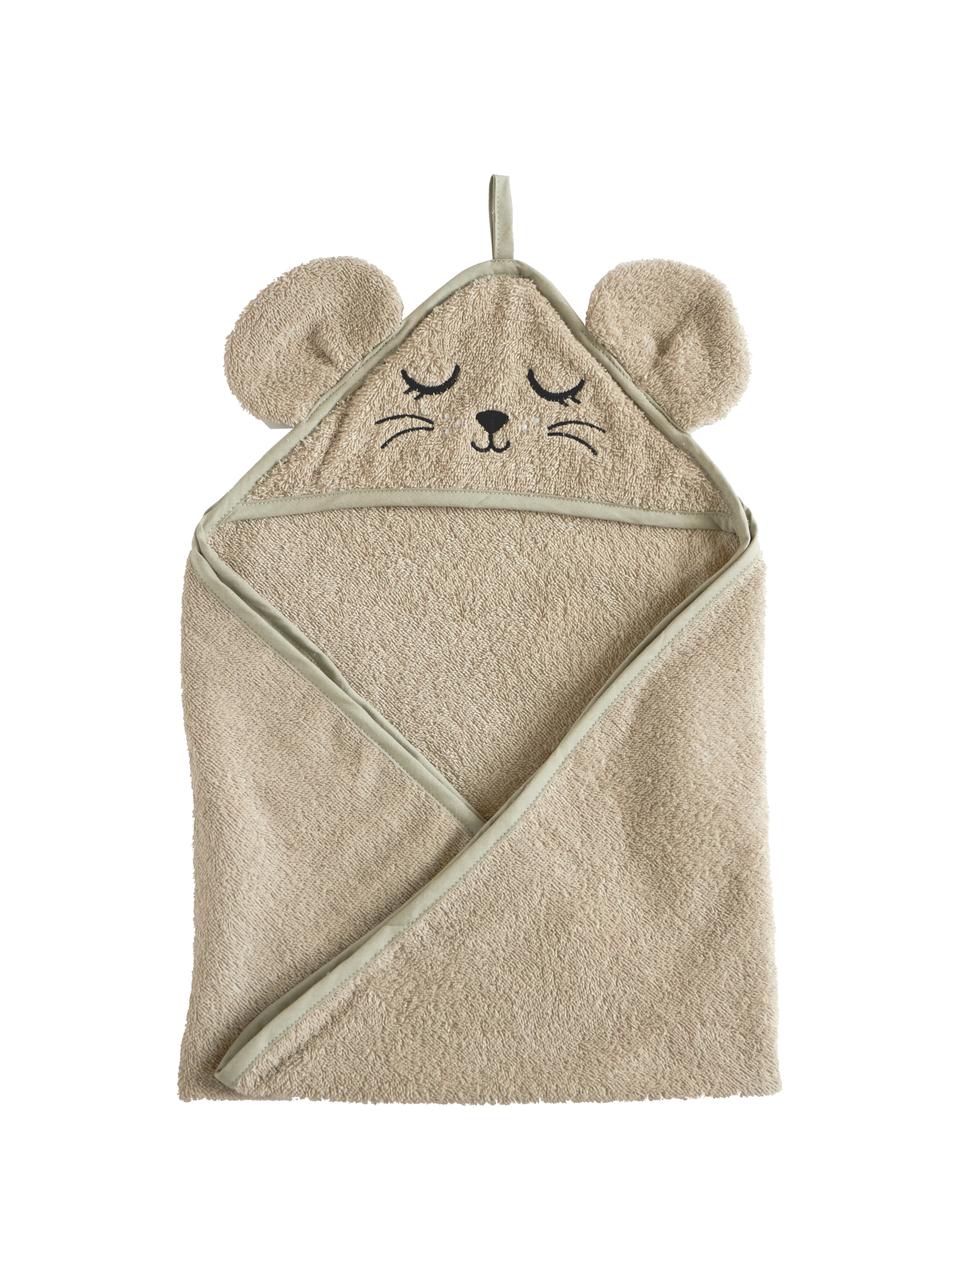 Asciugamano bambini in cotone organico Mouse, 100% cotone organico certificato GOTS, Topo, Larg. 72 x Lung. 72 cm